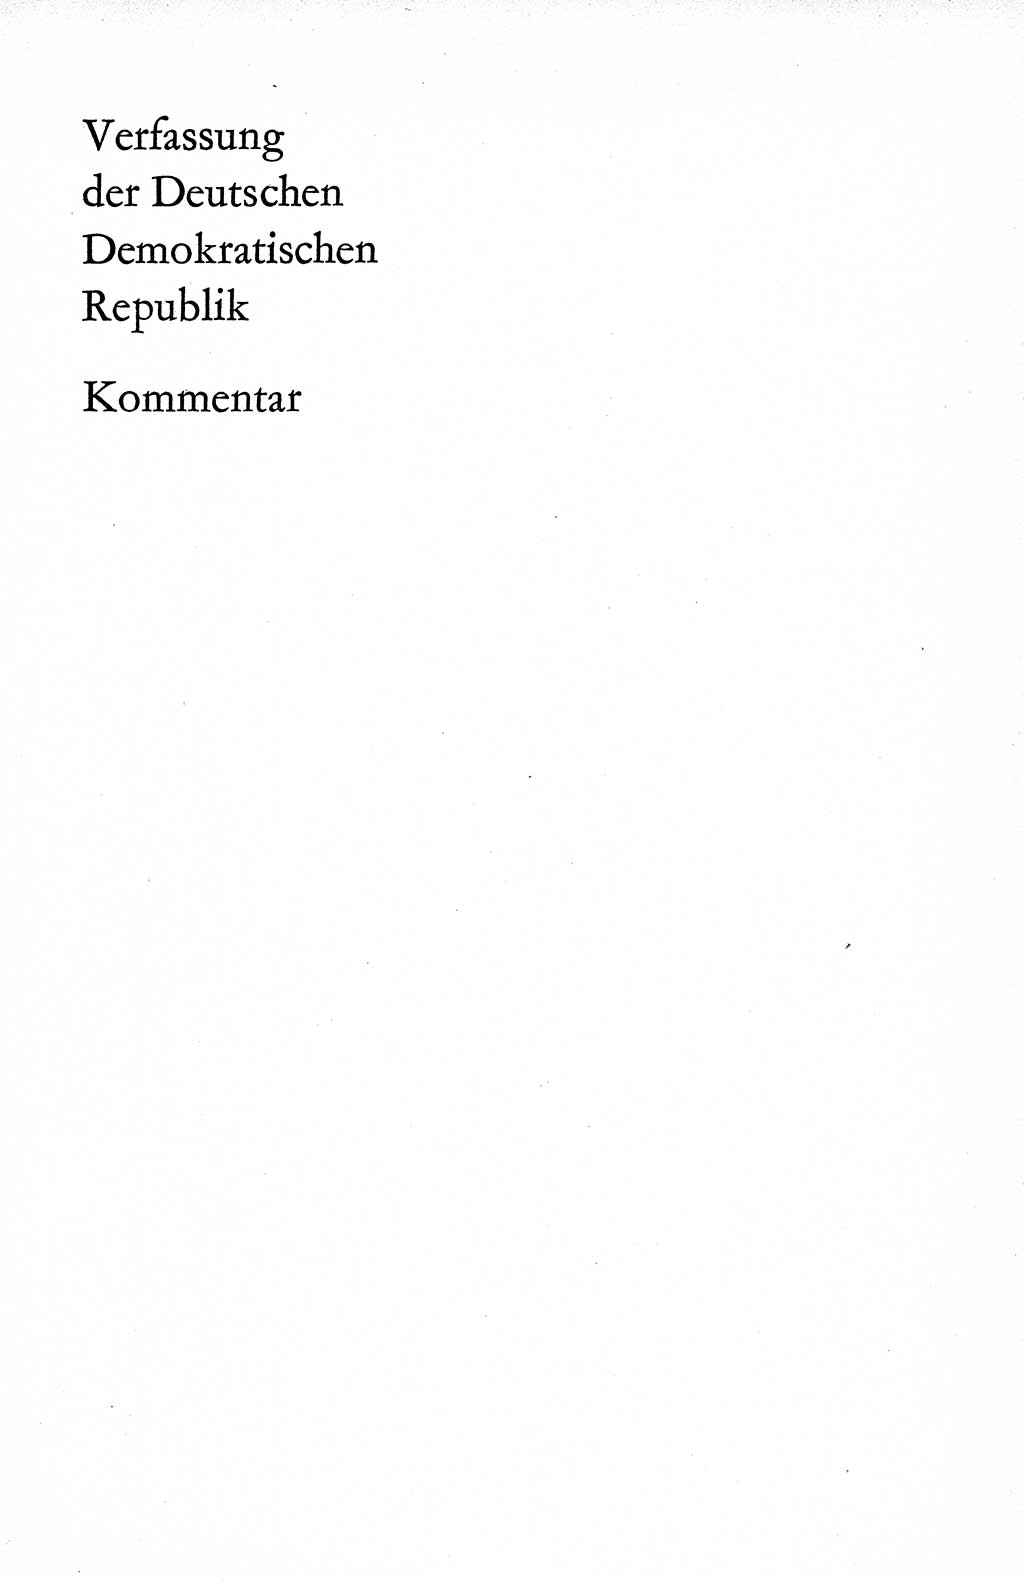 Verfassung der Deutschen Demokratischen Republik (DDR), Dokumente, Kommentar 1969, Band 1, Seite 195 (Verf. DDR Dok. Komm. 1969, Bd. 1, S. 195)